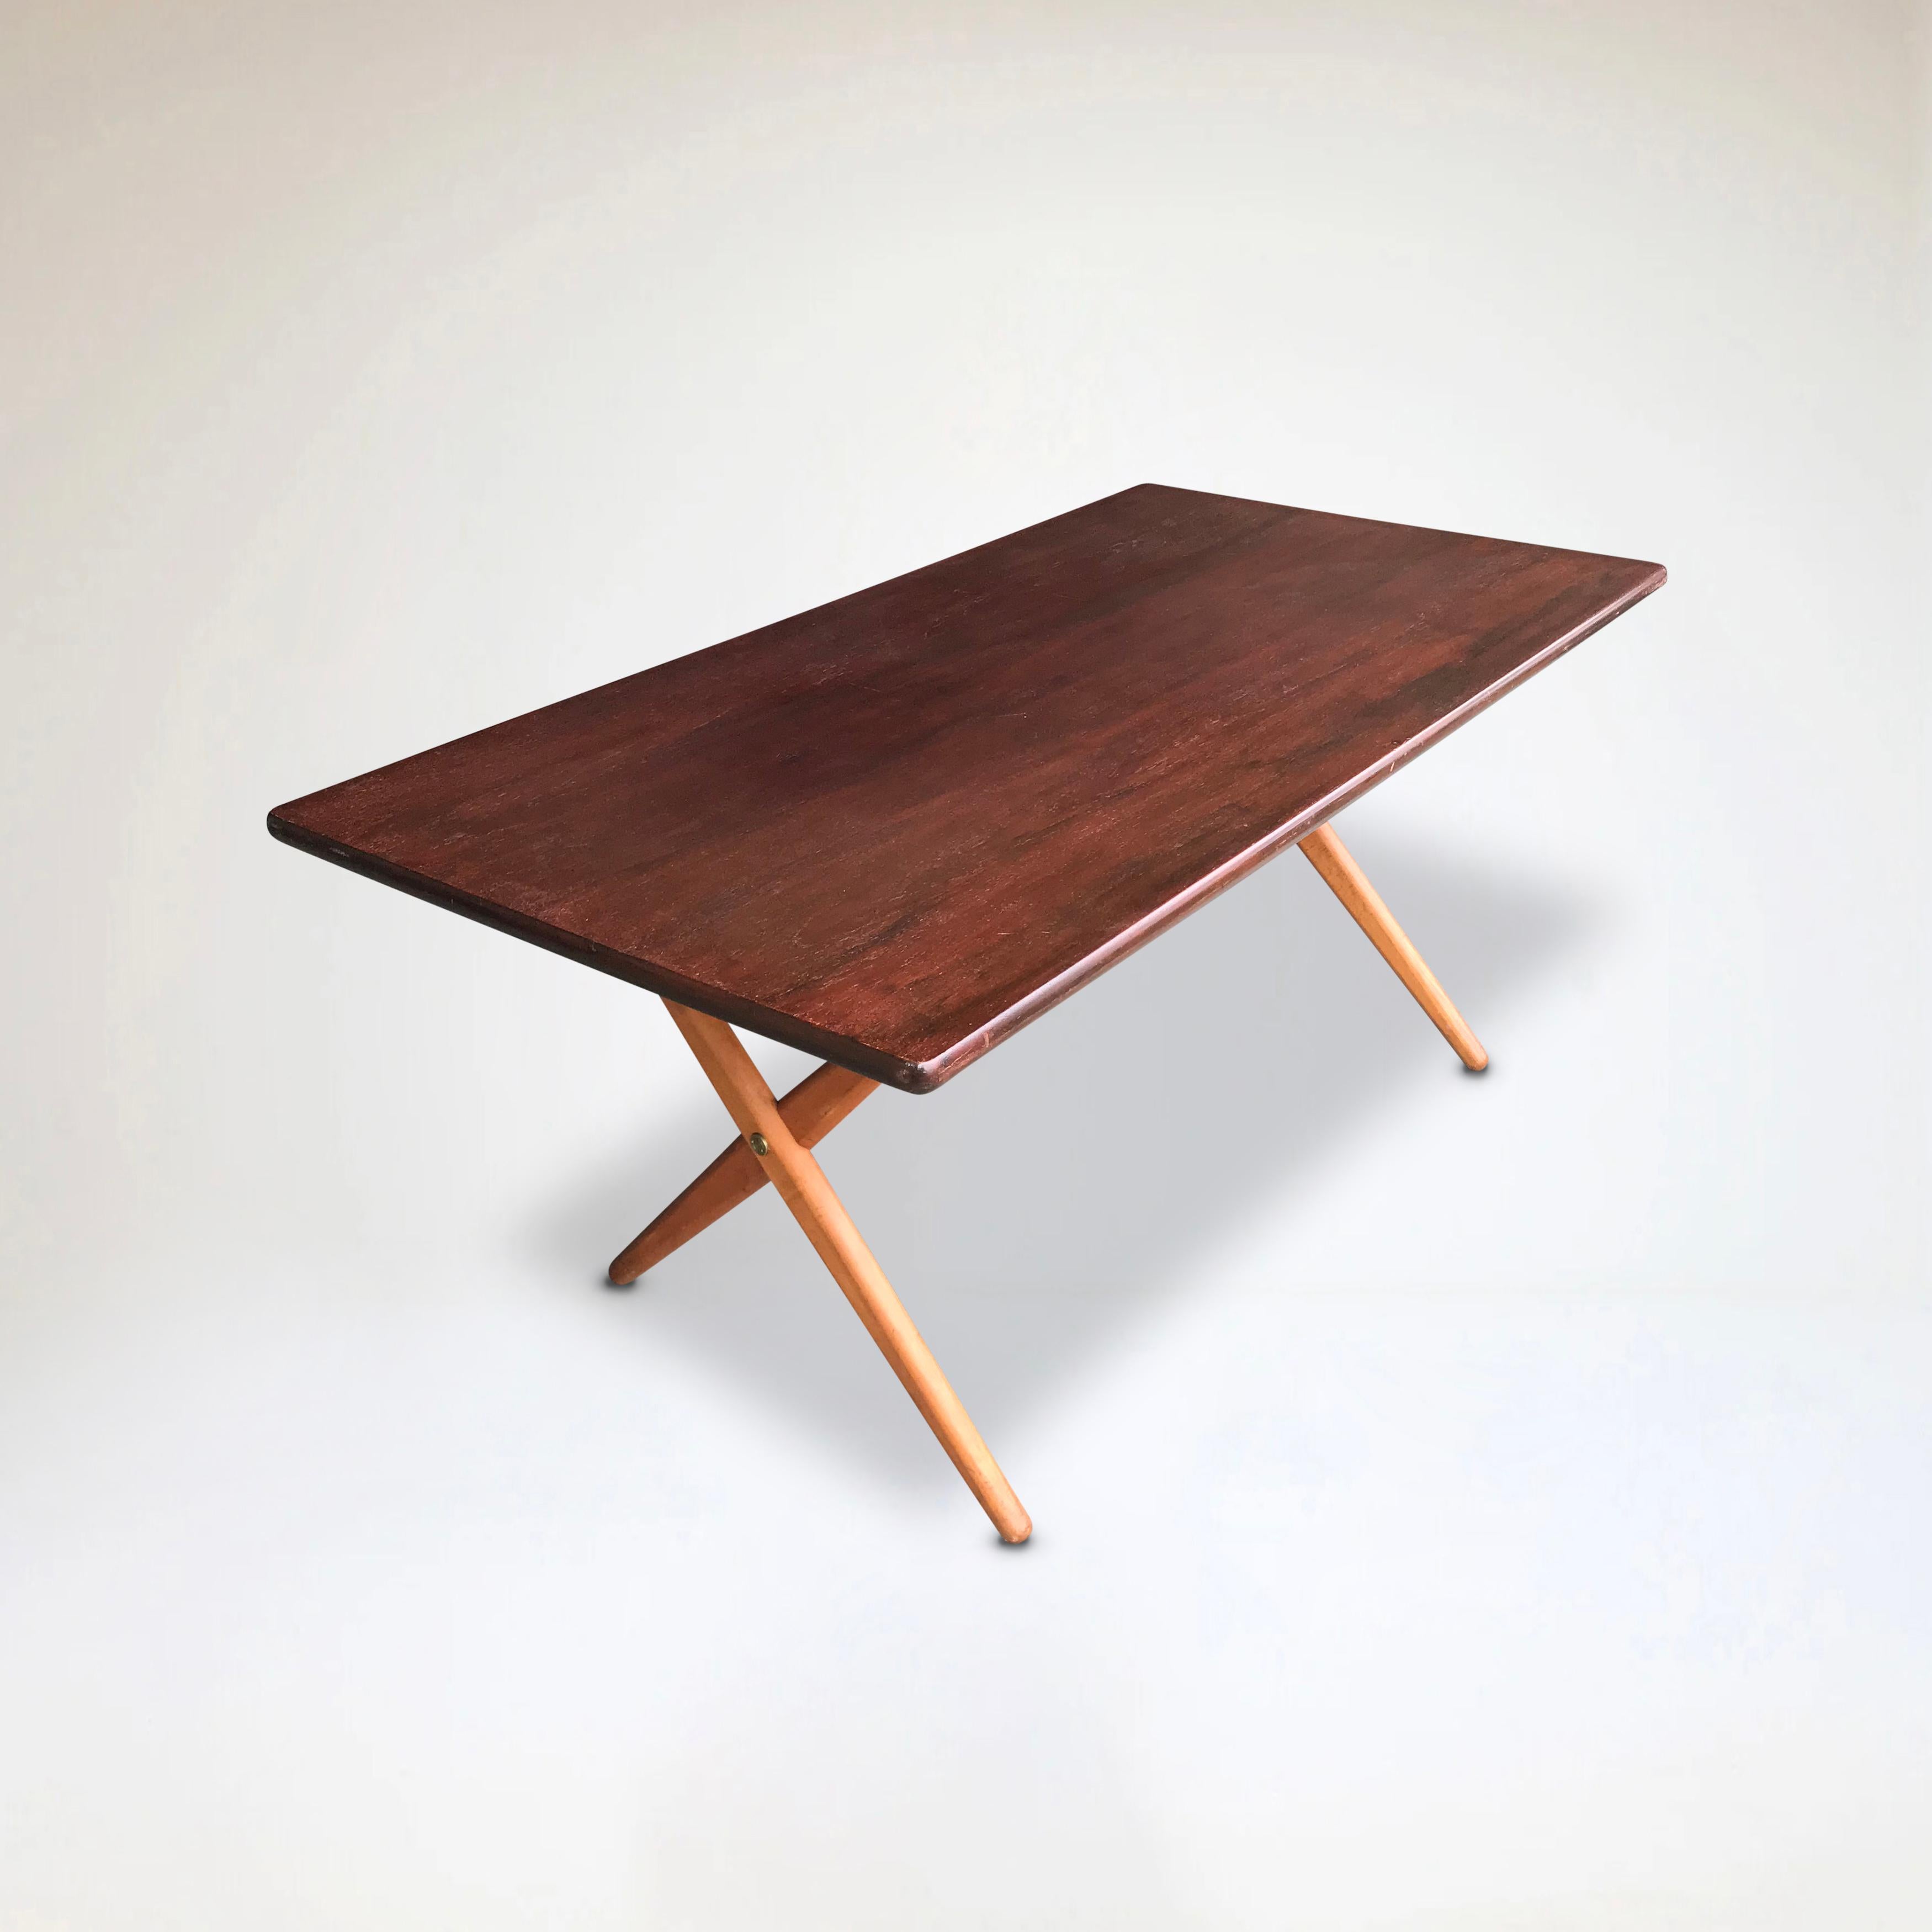 Design danois classique de Hans Wegner ; une table de salle à manger AT-303 sawbuck en chêne massif, produite par Andreas Tuck Danemark dans les années 1950.

Design danois minimaliste de la plus haute qualité en chêne teinté, avec des pieds croisés